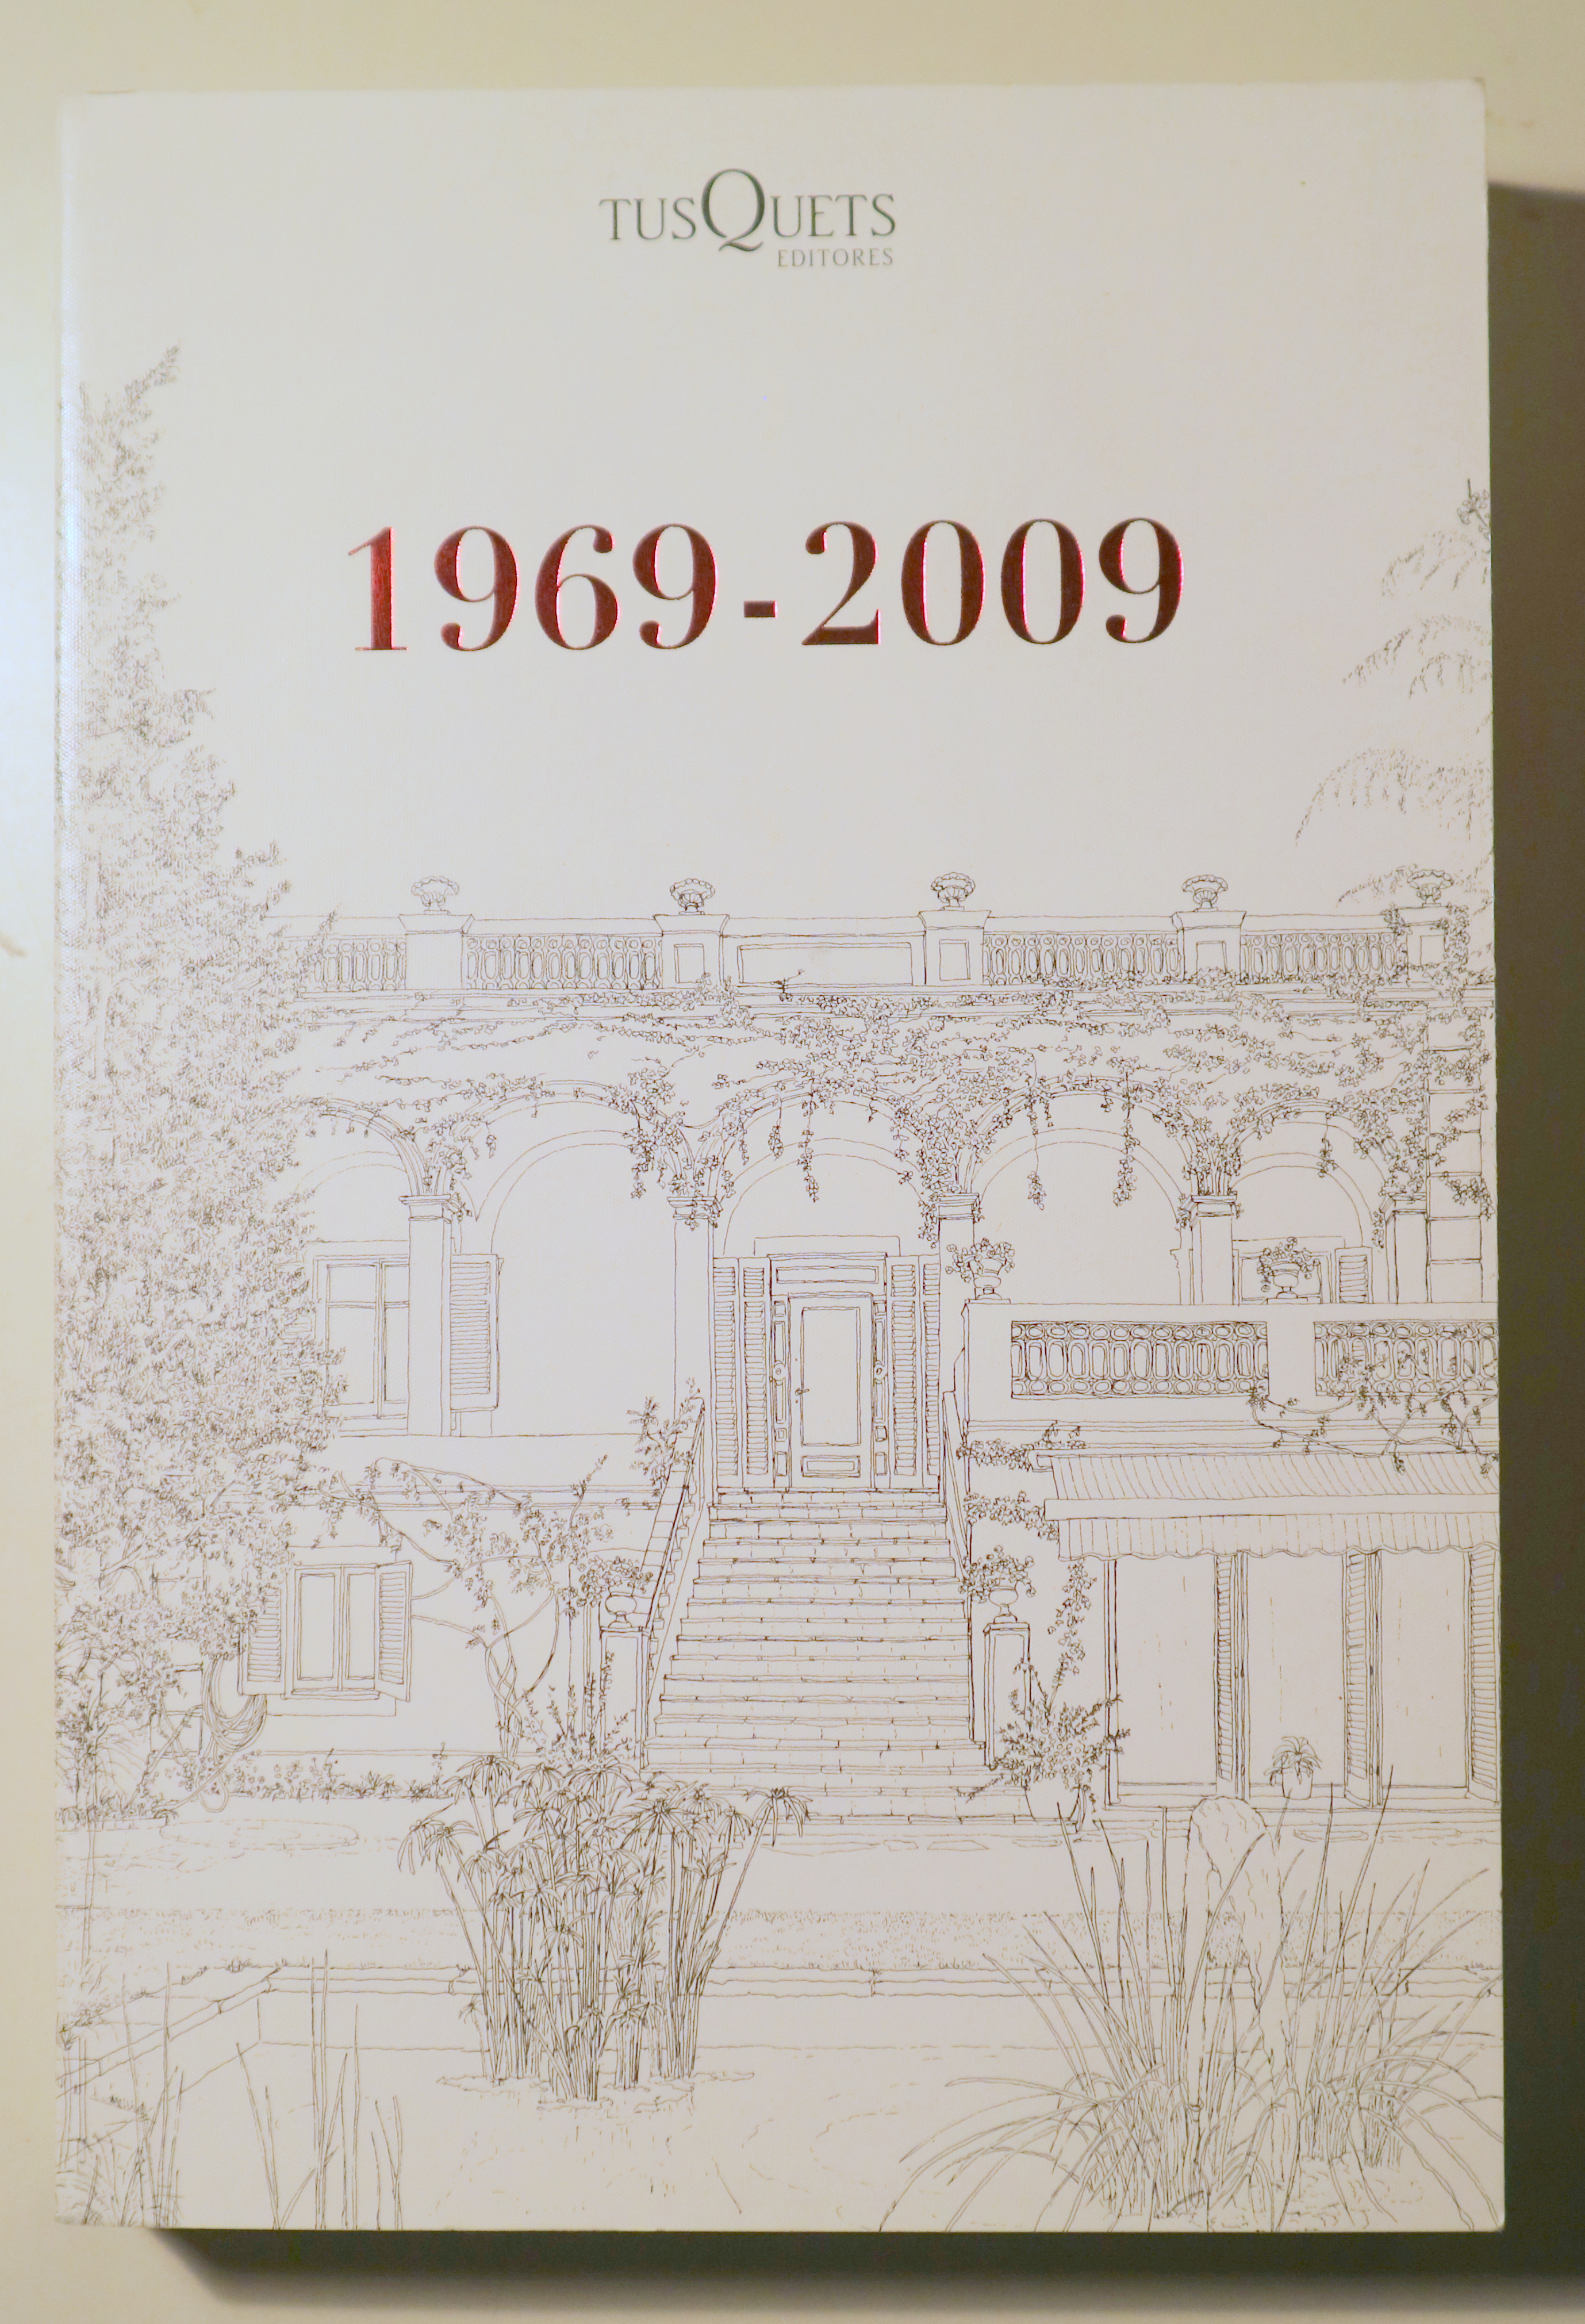 TUSQUETS EDITORES 1969-2009 - Barcelona 2009 - Muy ilustrado